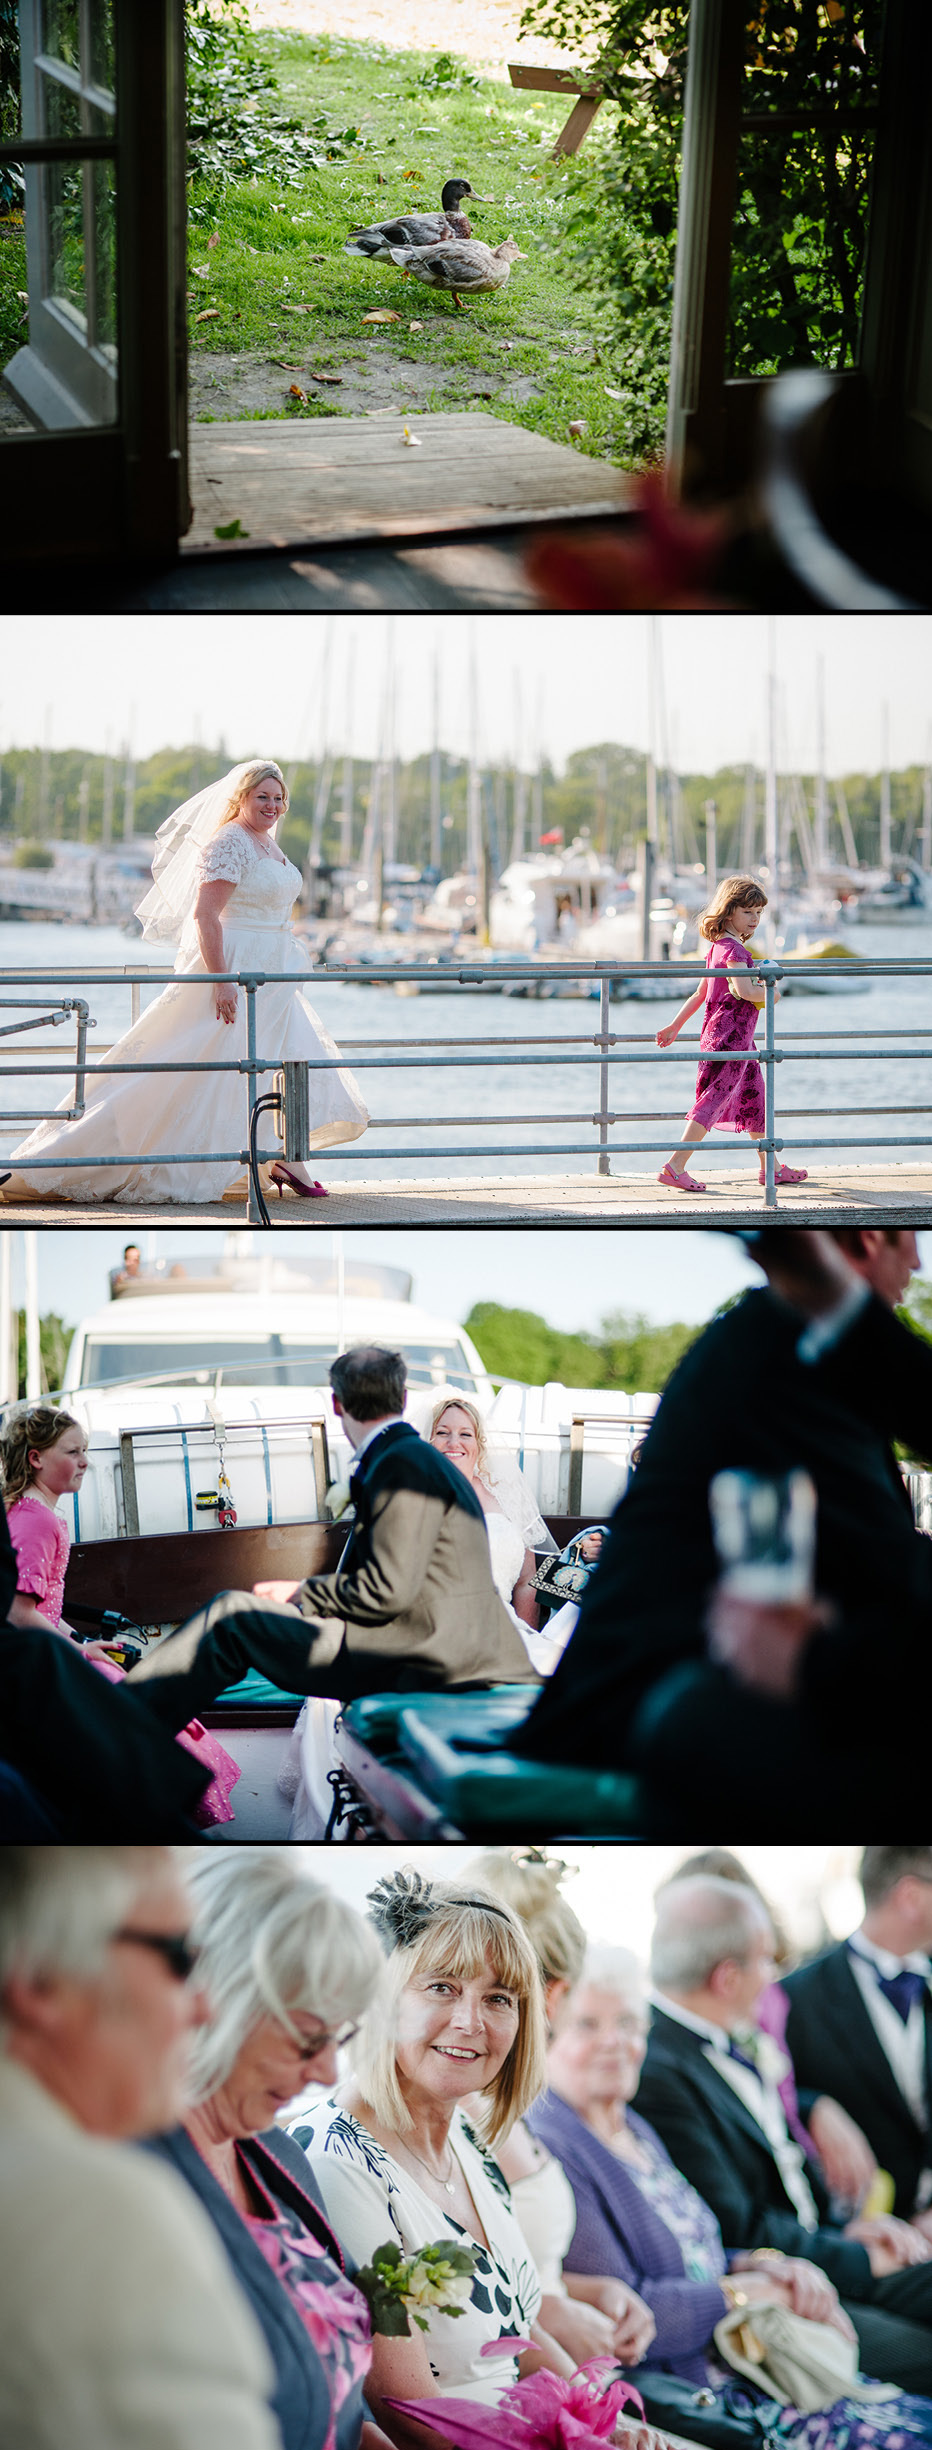 boat trip wedding